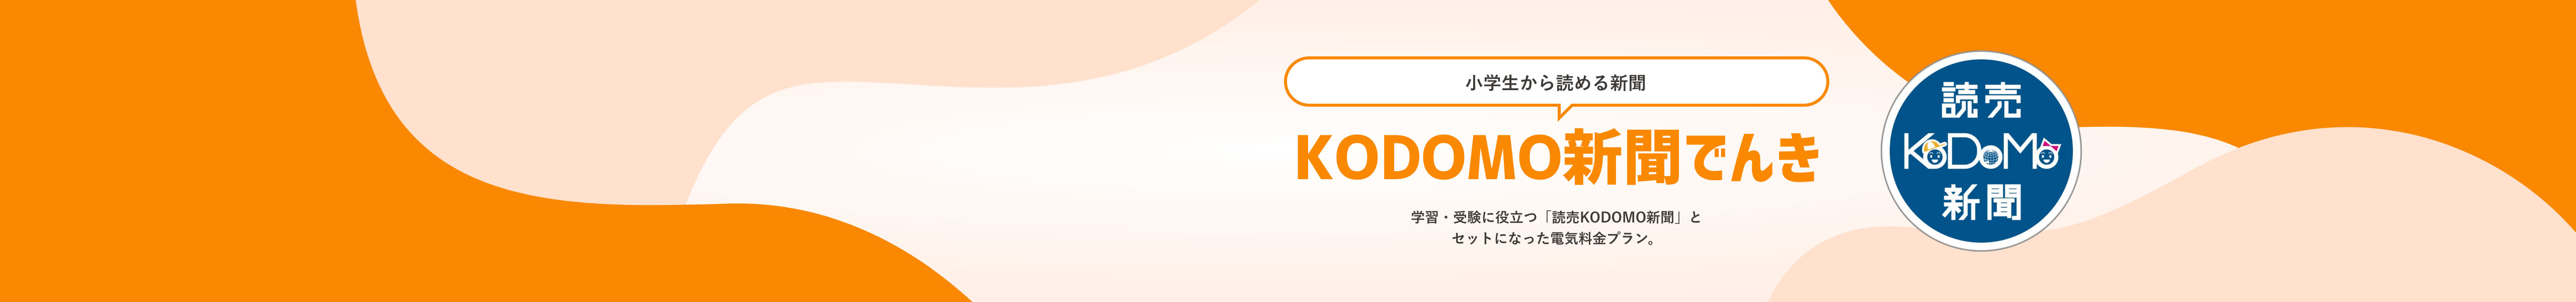 学習・受験に役立つ「読売KODOMO新聞」とセットになった電気料金プラン